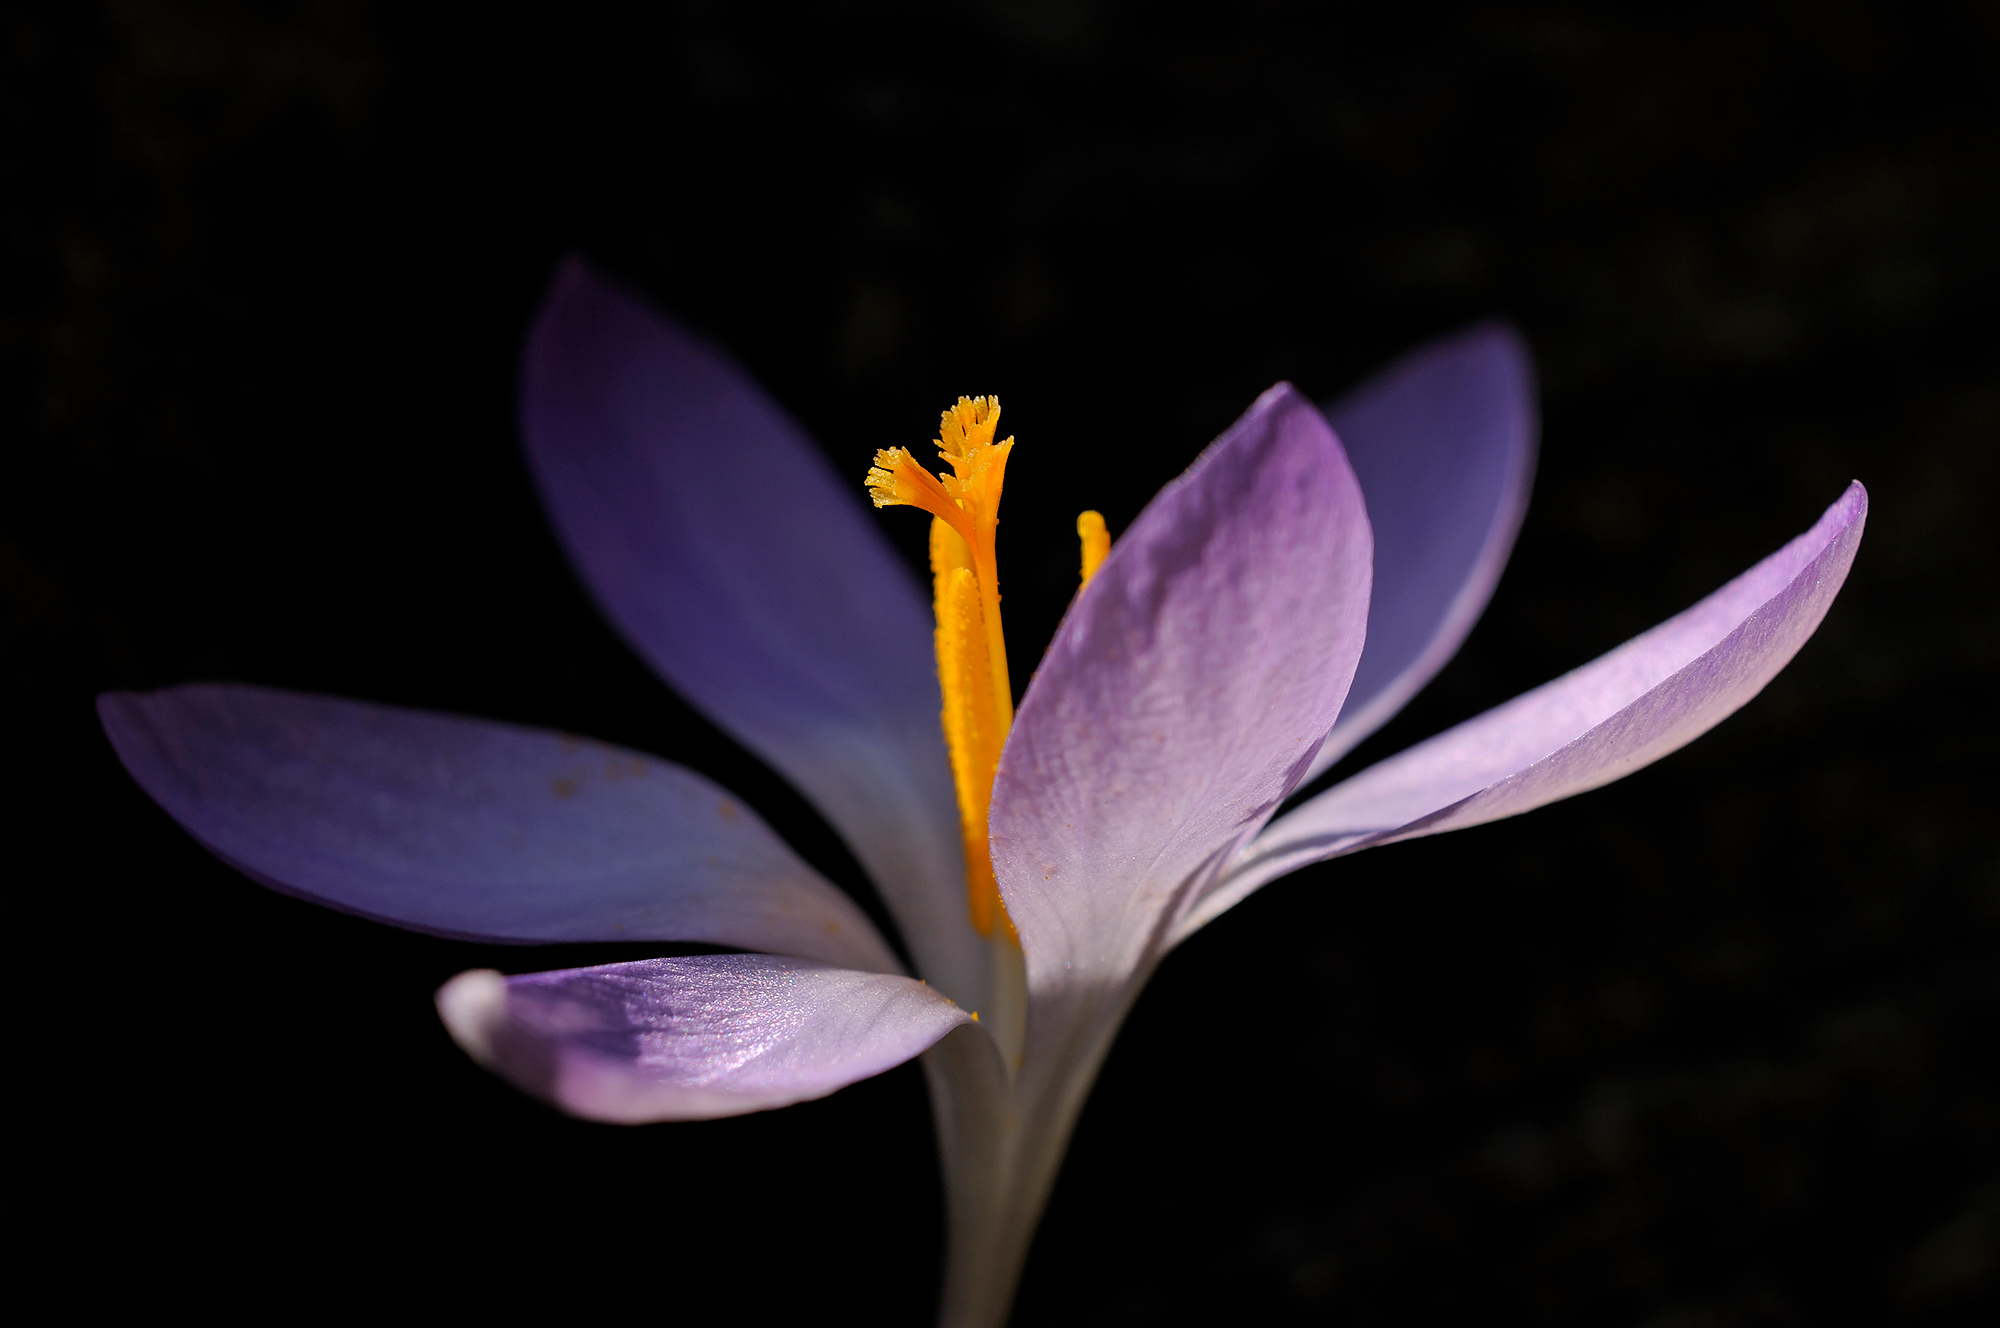 Zonlicht schijnt door paarse bloem van boerenkrokus (Crocus tommasinianus) tijdens lente in het Noordhollands Duinreservaat bij Bakkum.